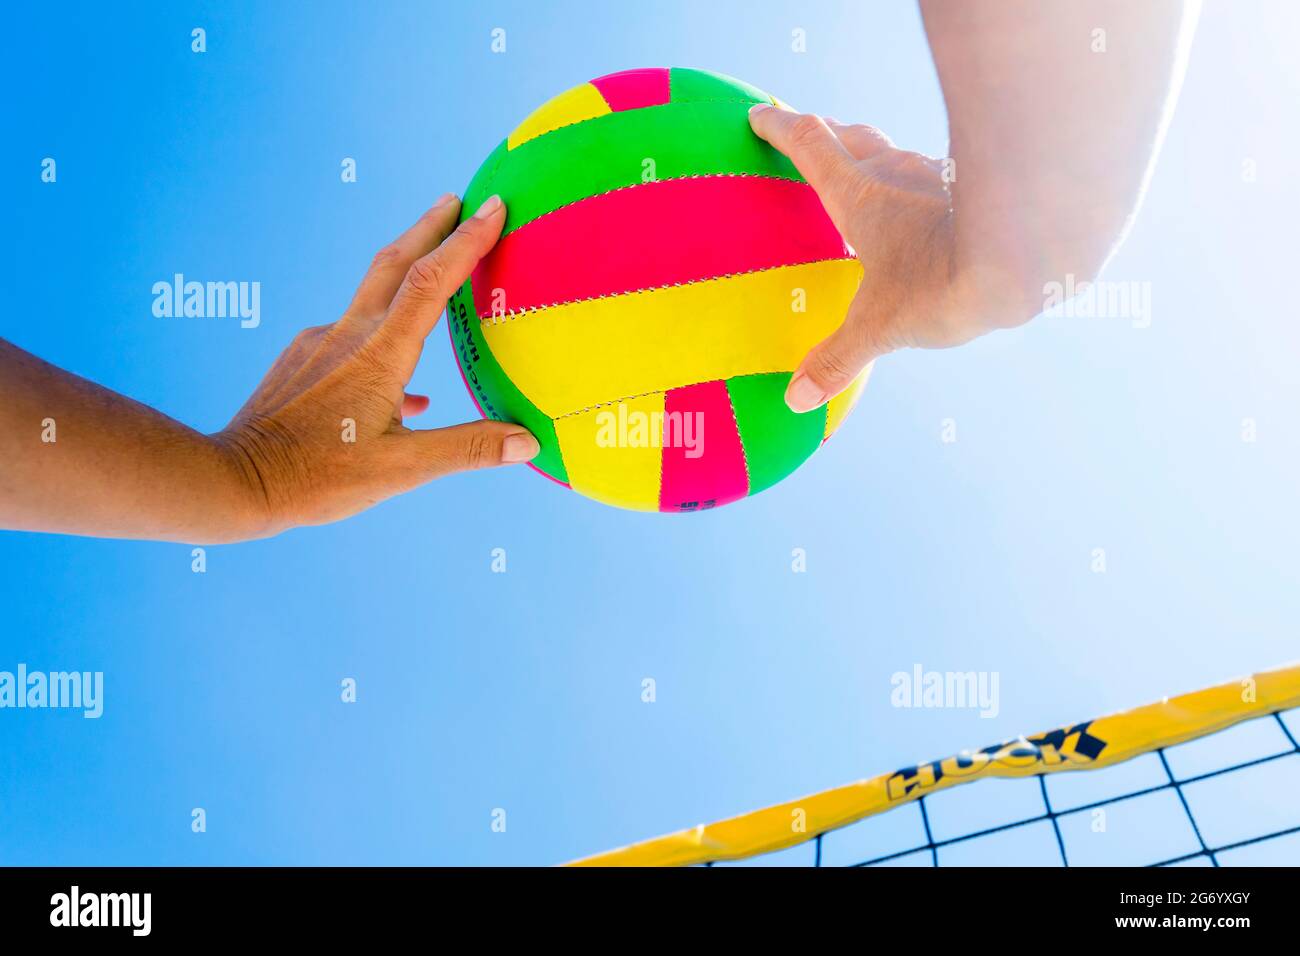 mains recevant le ballon de beach-volley de couleur volante Banque D'Images